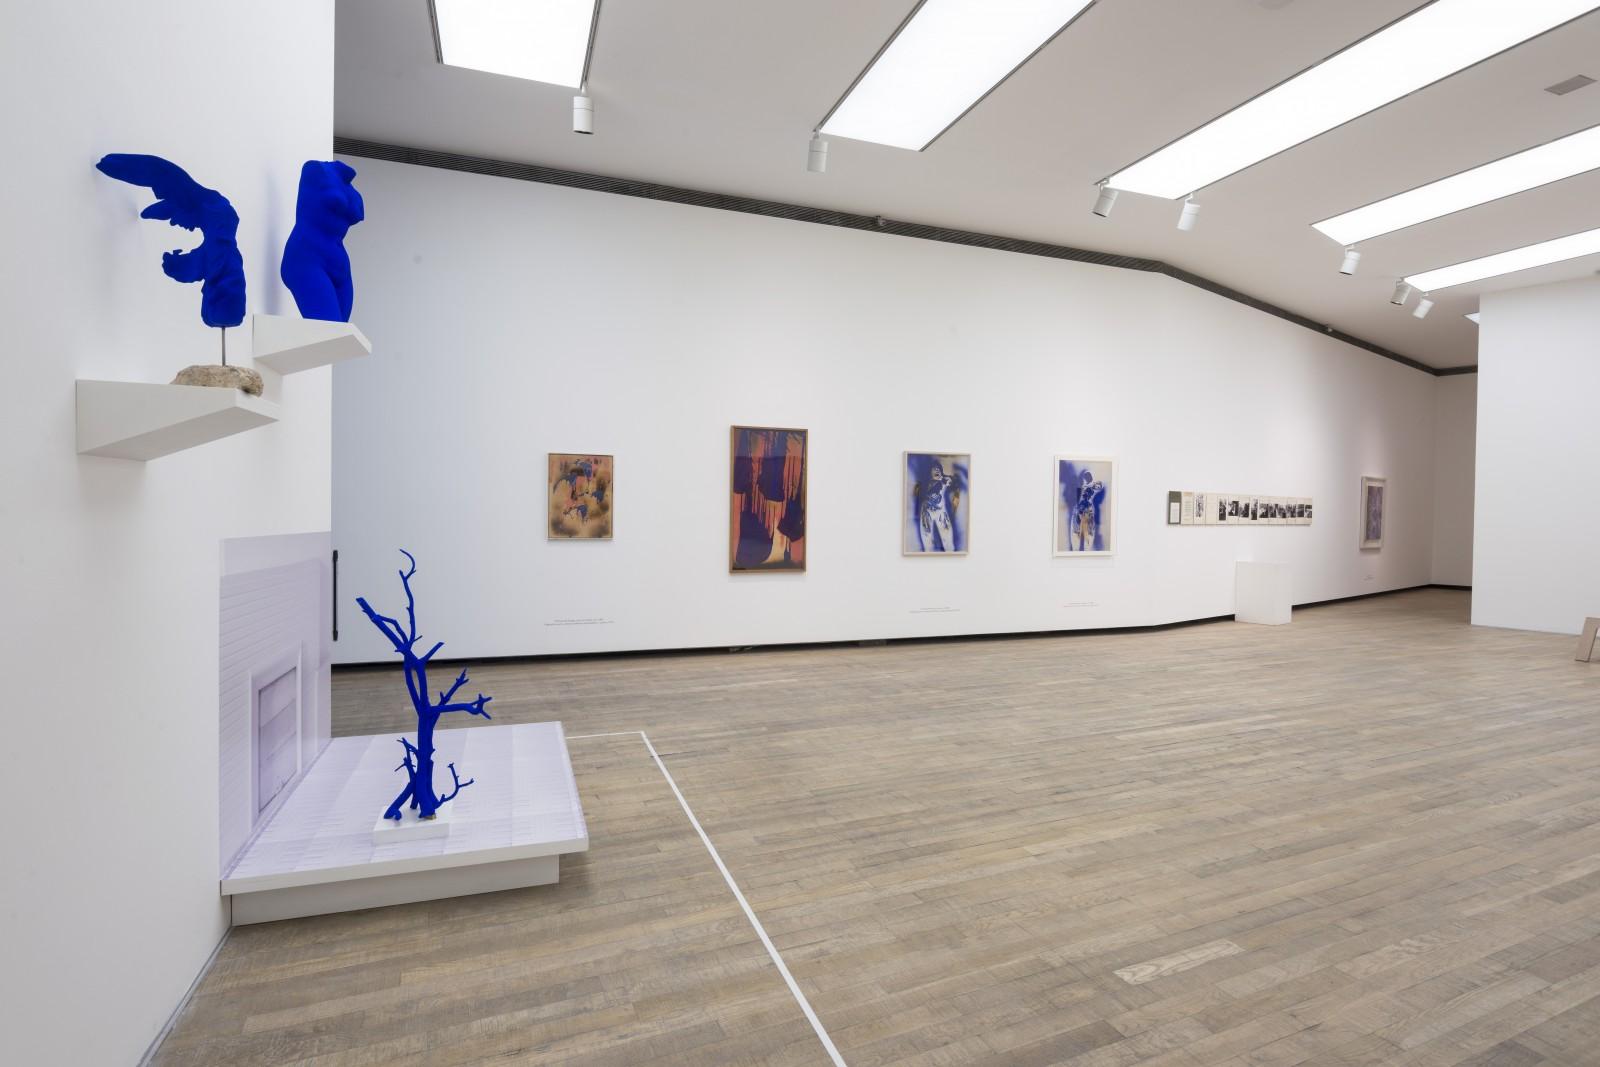 Vue de l'exposition "Yves Klein - Retrospectiva", PROA Fundación, 2017